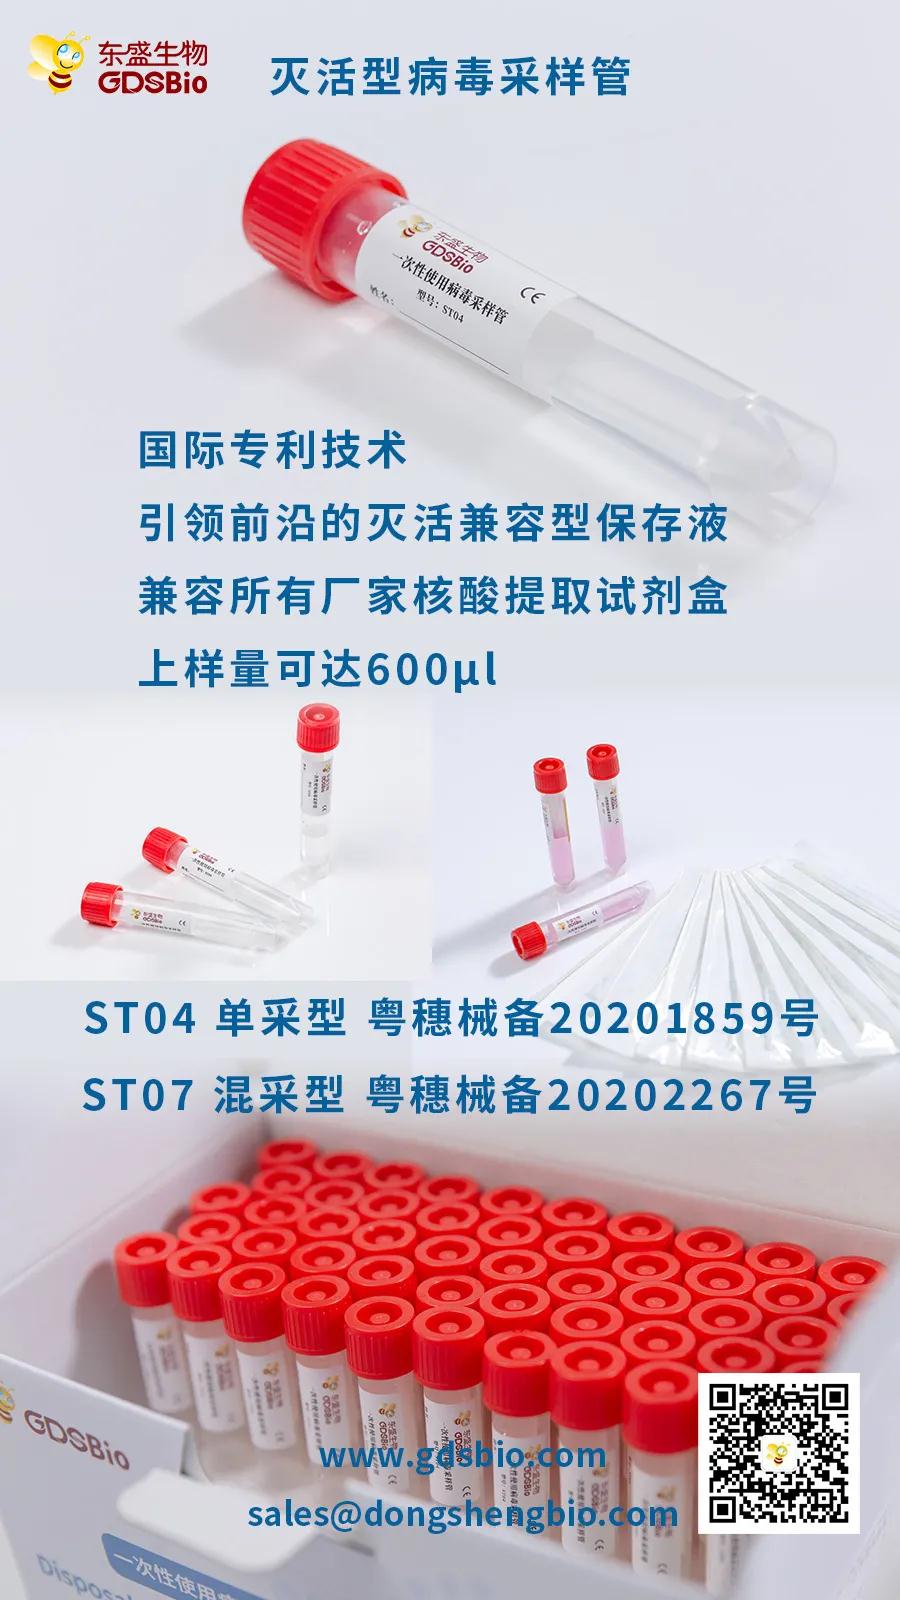 广州东盛研发出可提高检出率的病毒采样管